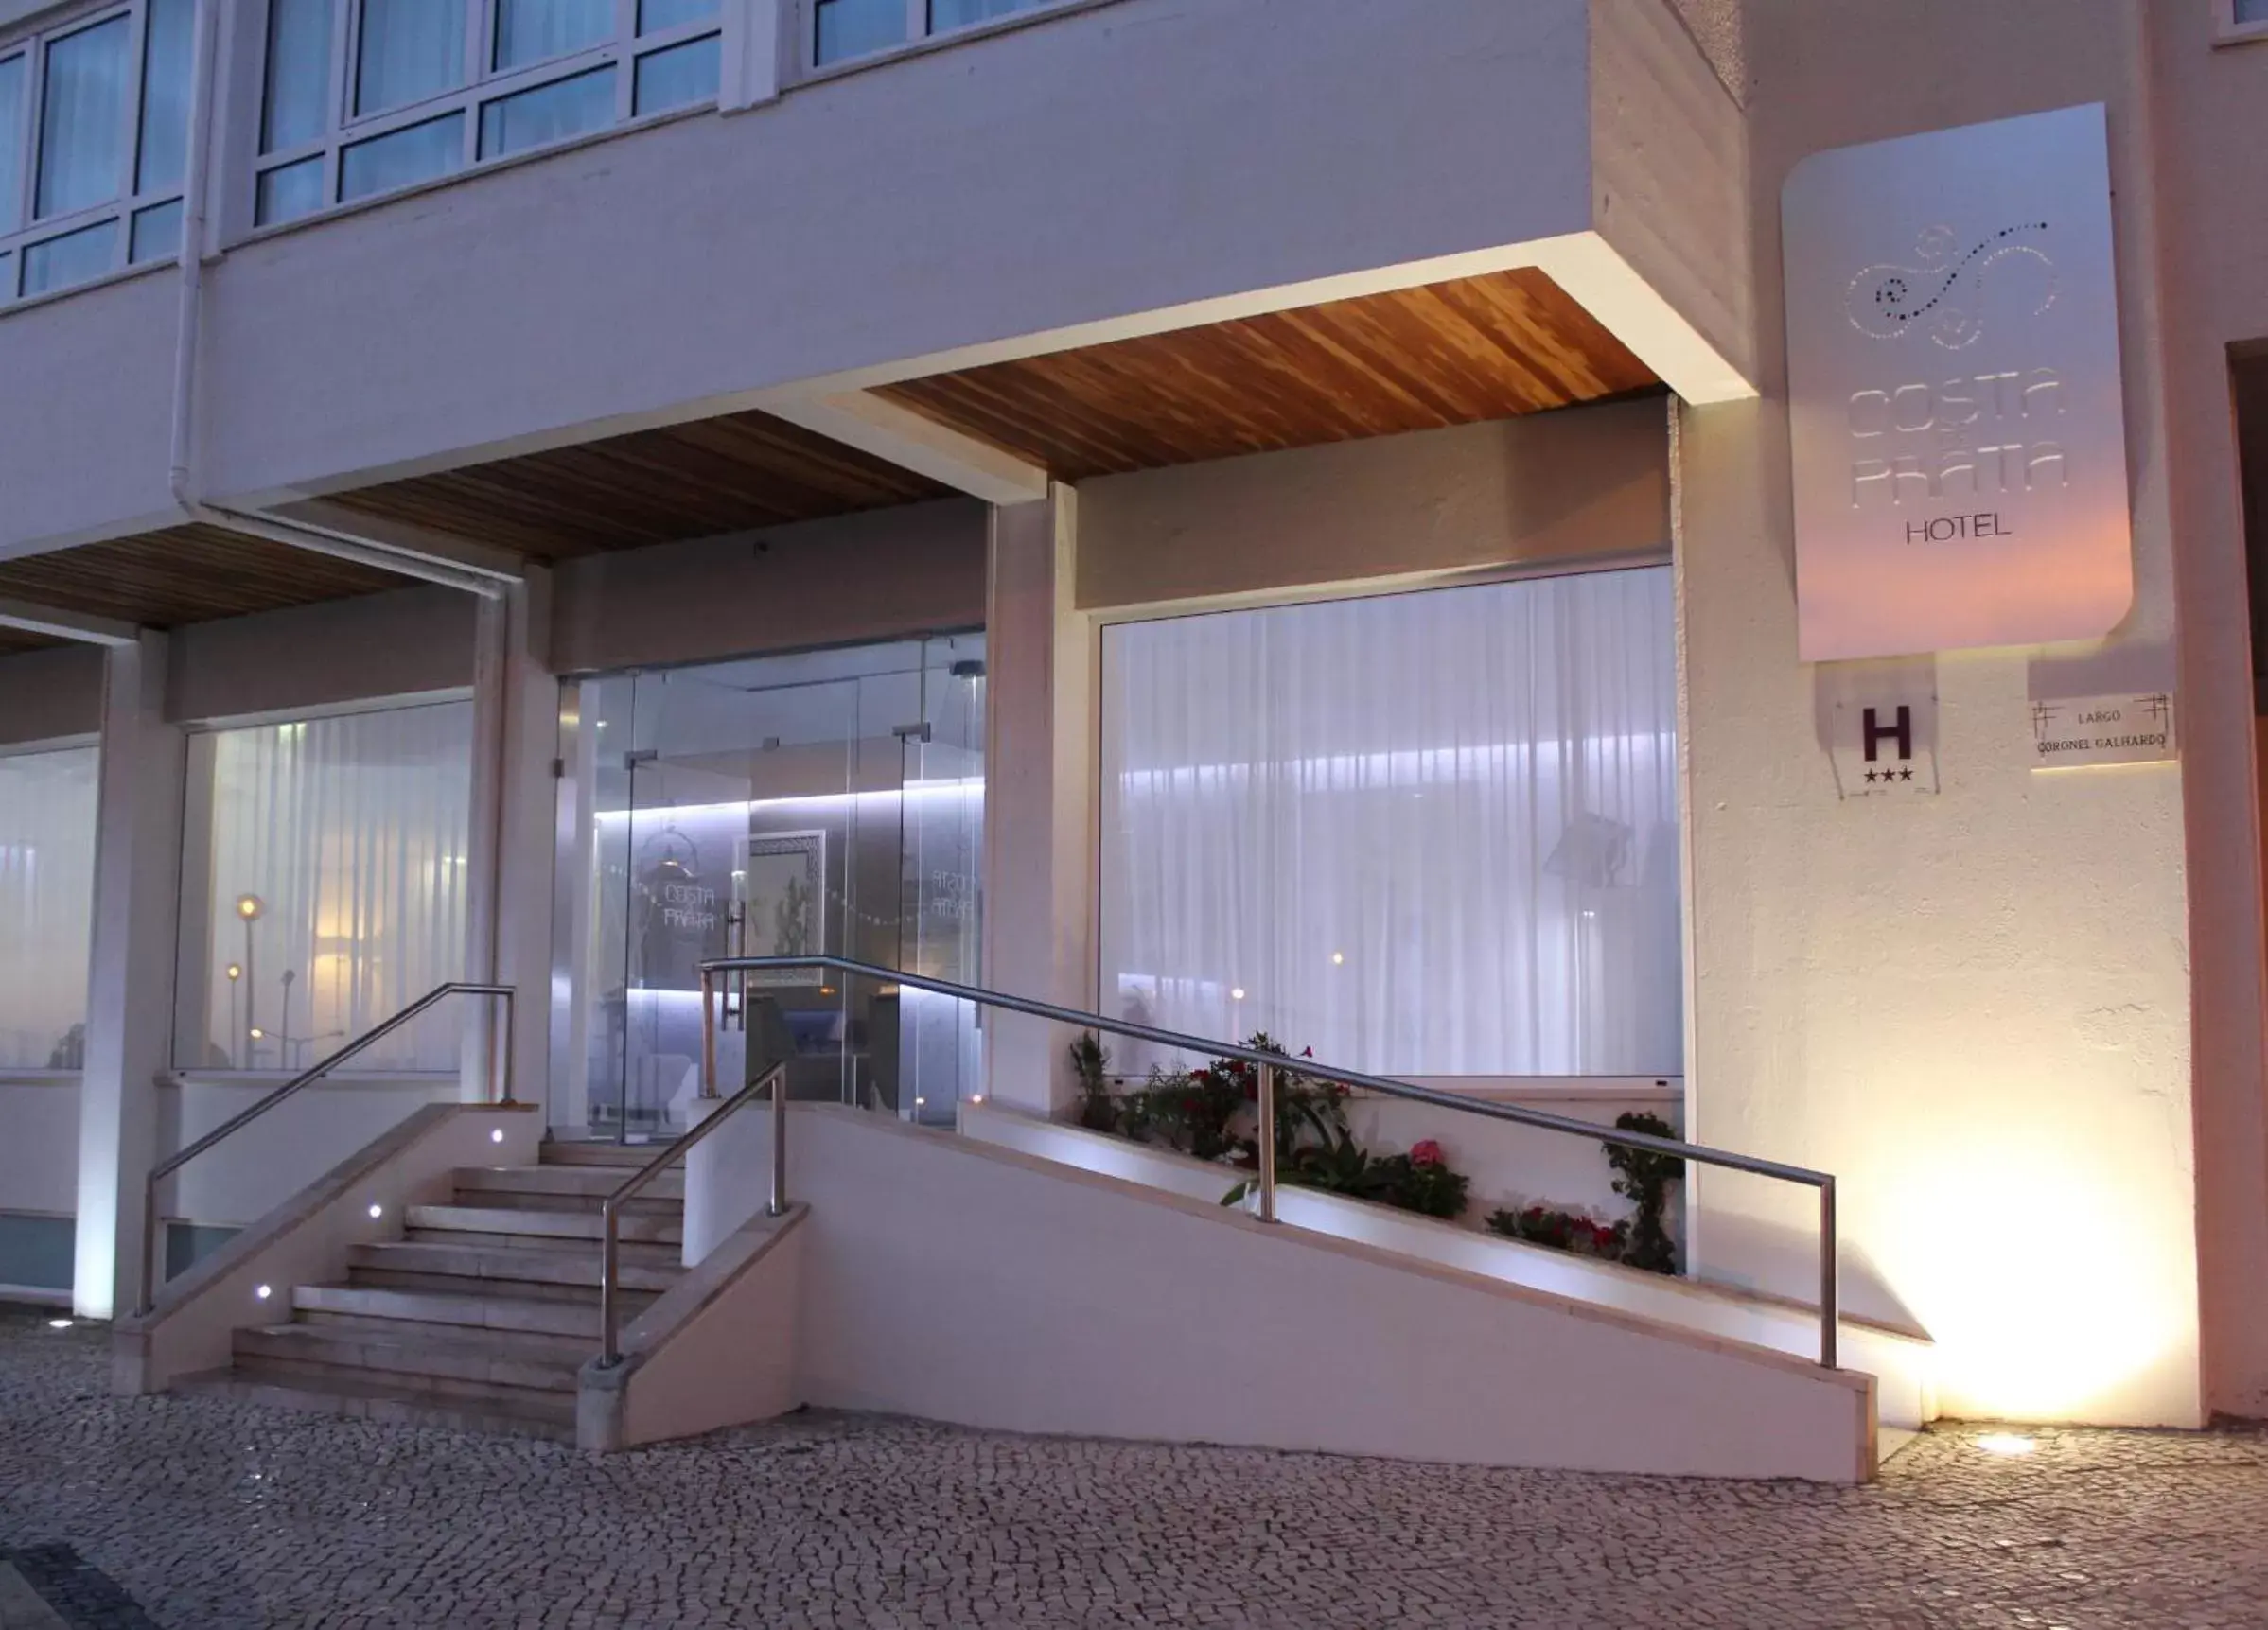 Facade/entrance in Costa de Prata Hotel